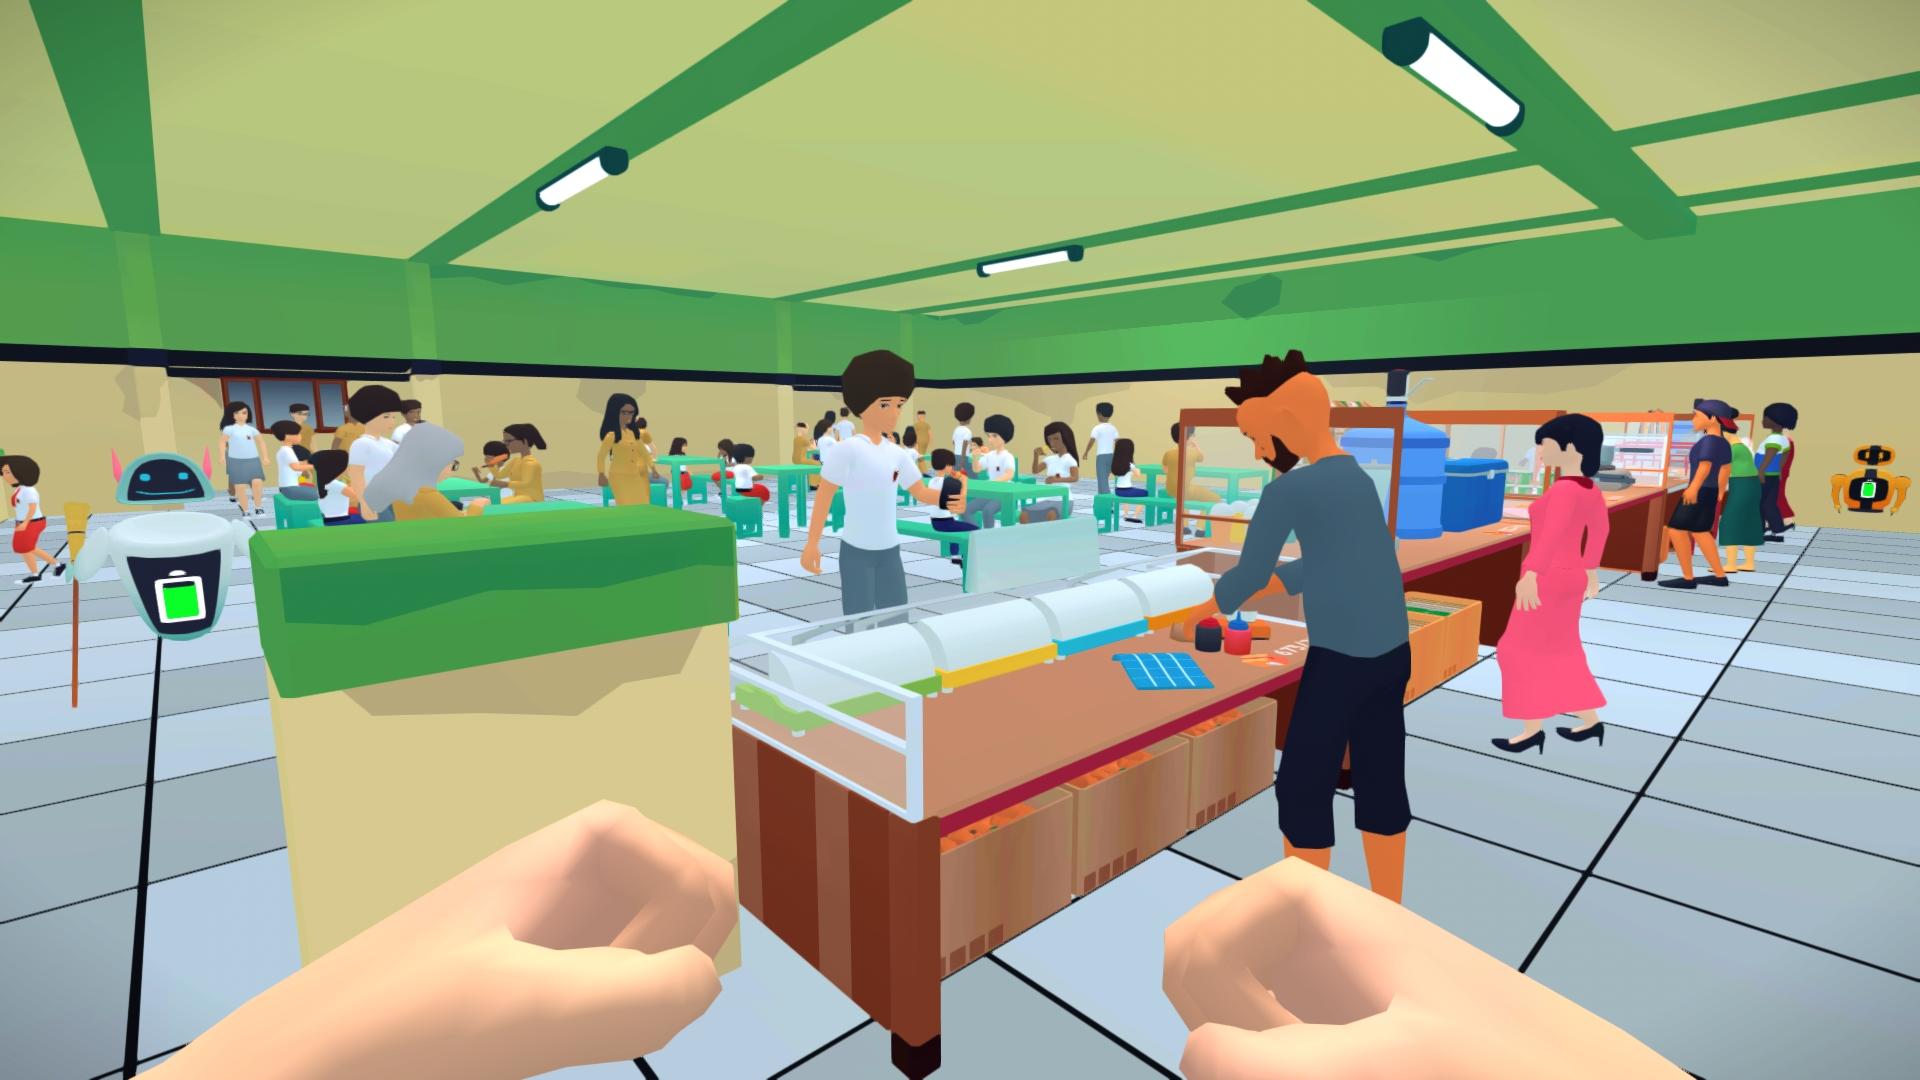 Screenshot 1 of Simulateur de cafétéria scolaire 6.4.1